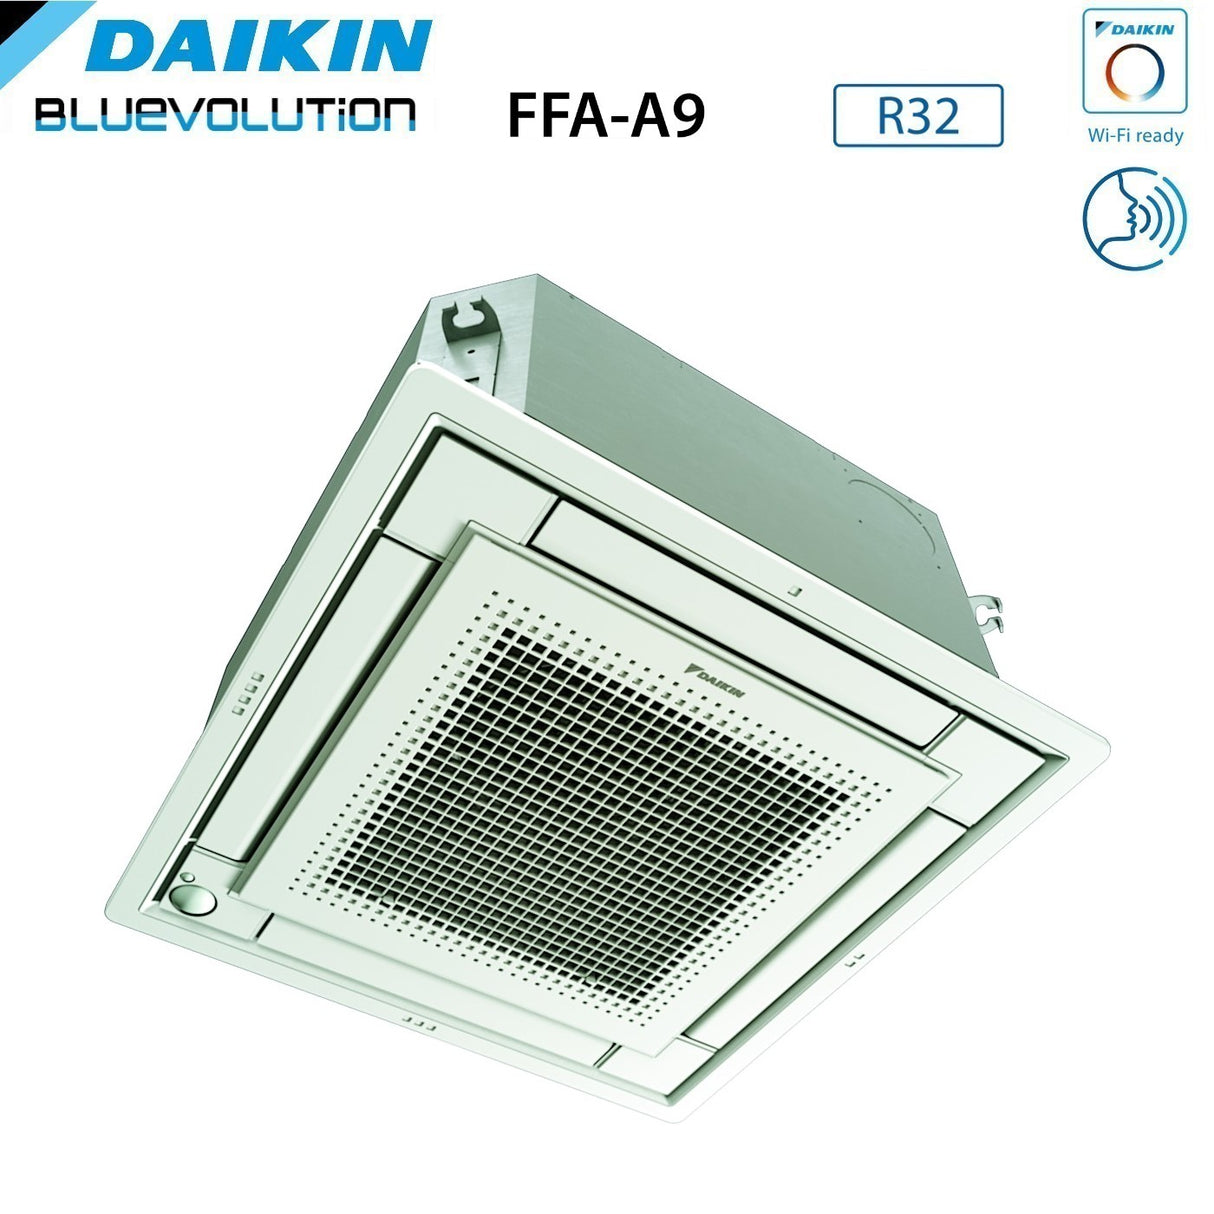 immagine-27-daikin-climatizzatore-condizionatore-daikin-a-cassetta-fully-flat-9000-btu-ffa25a9-r-32-wi-fi-optional-con-griglia-inclusa-classe-aa-garanzia-italiana